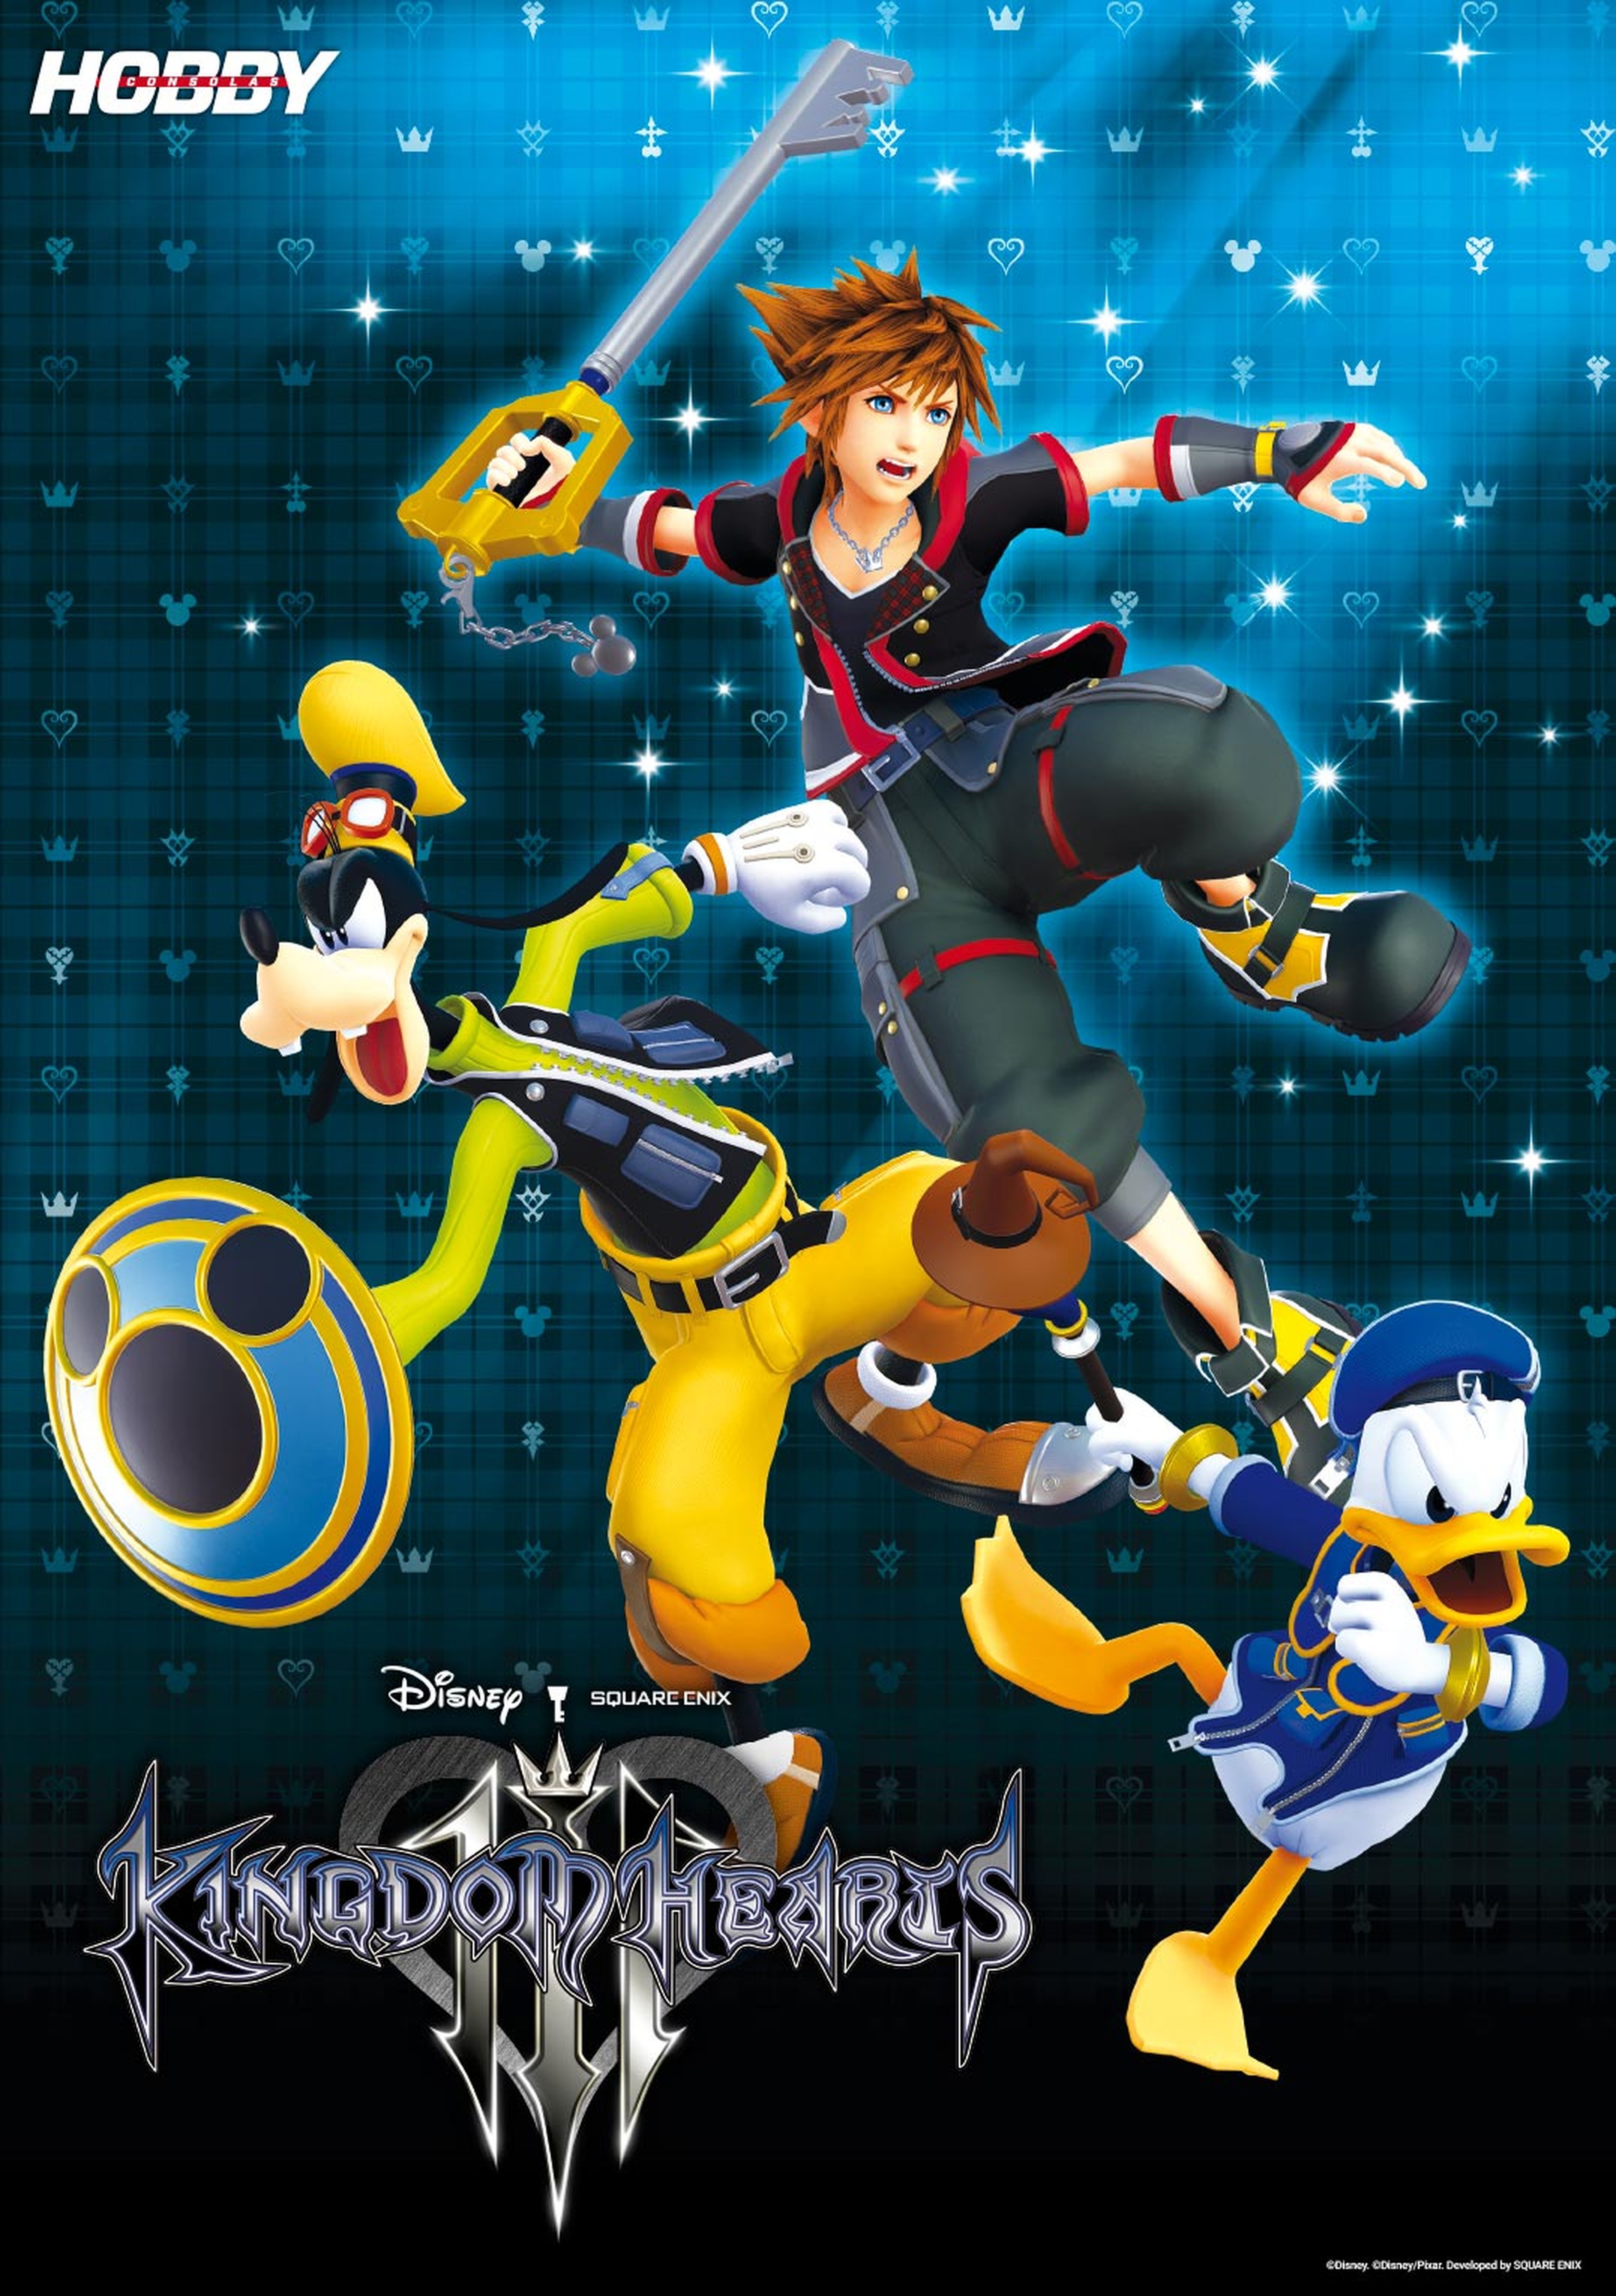 Hobby Consolas 332, a la venta con pósters de Kingdom Hearts III y Anthem